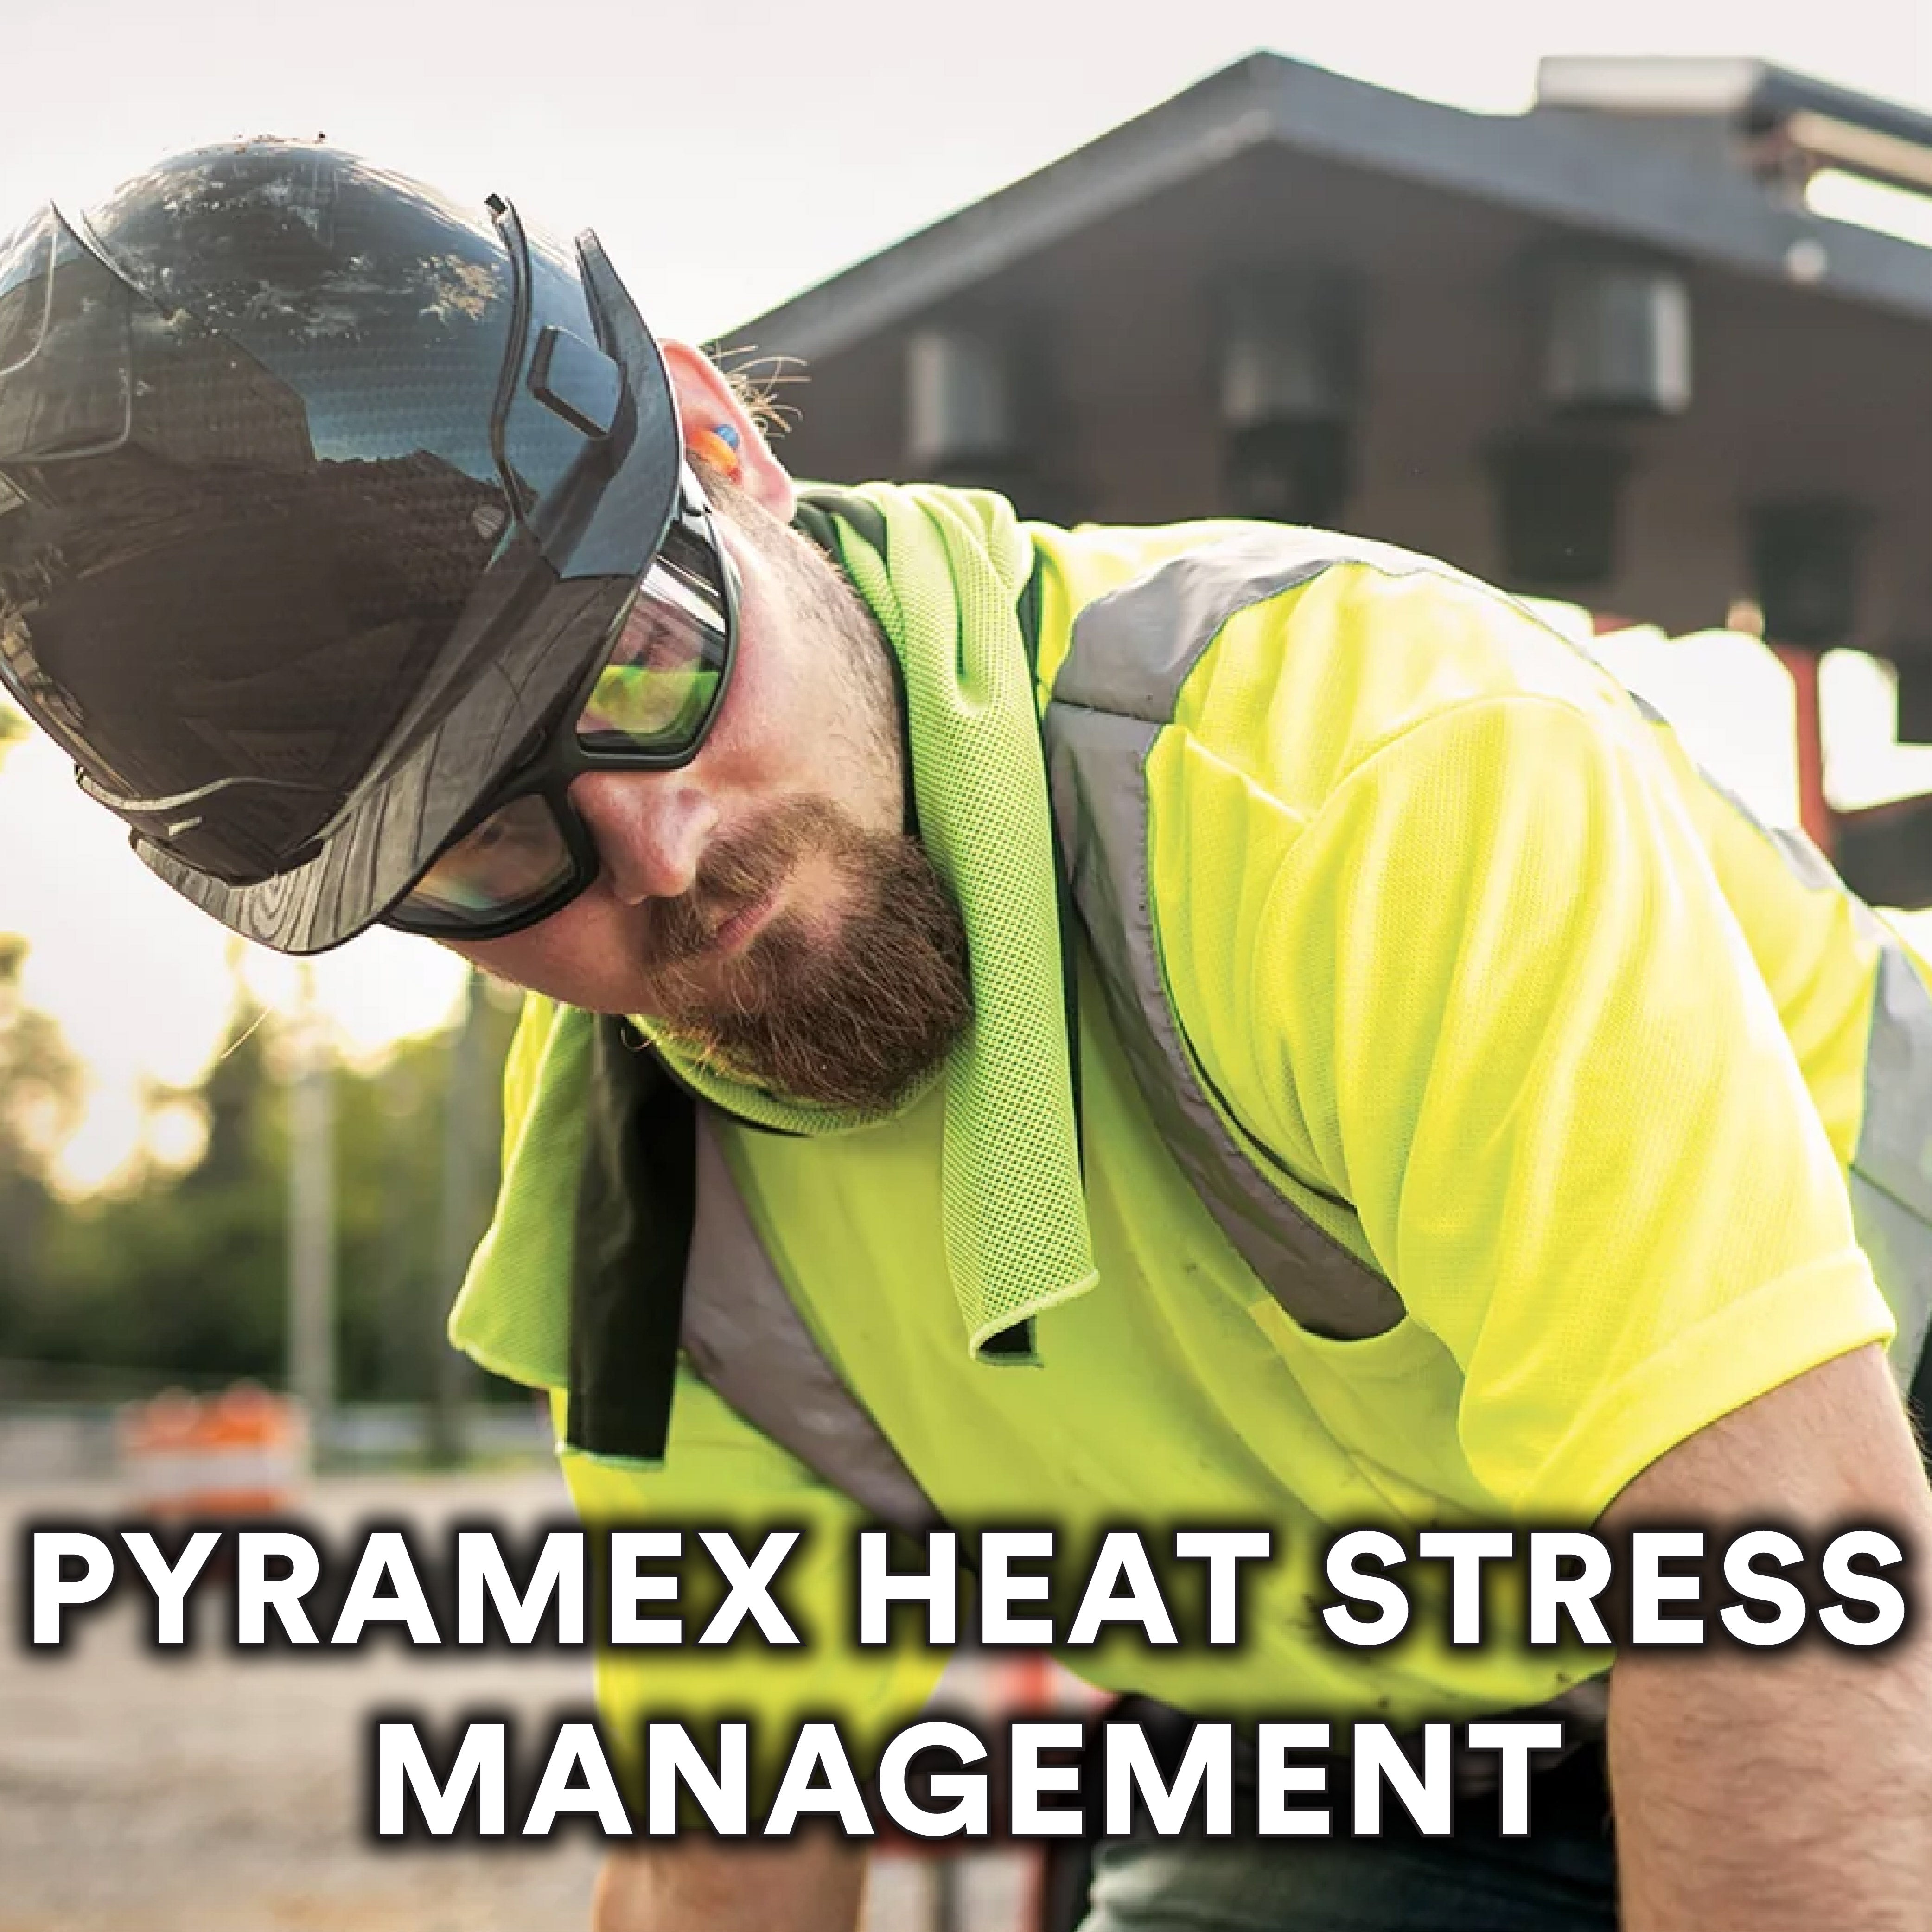 Pyramex Heat Stress Management